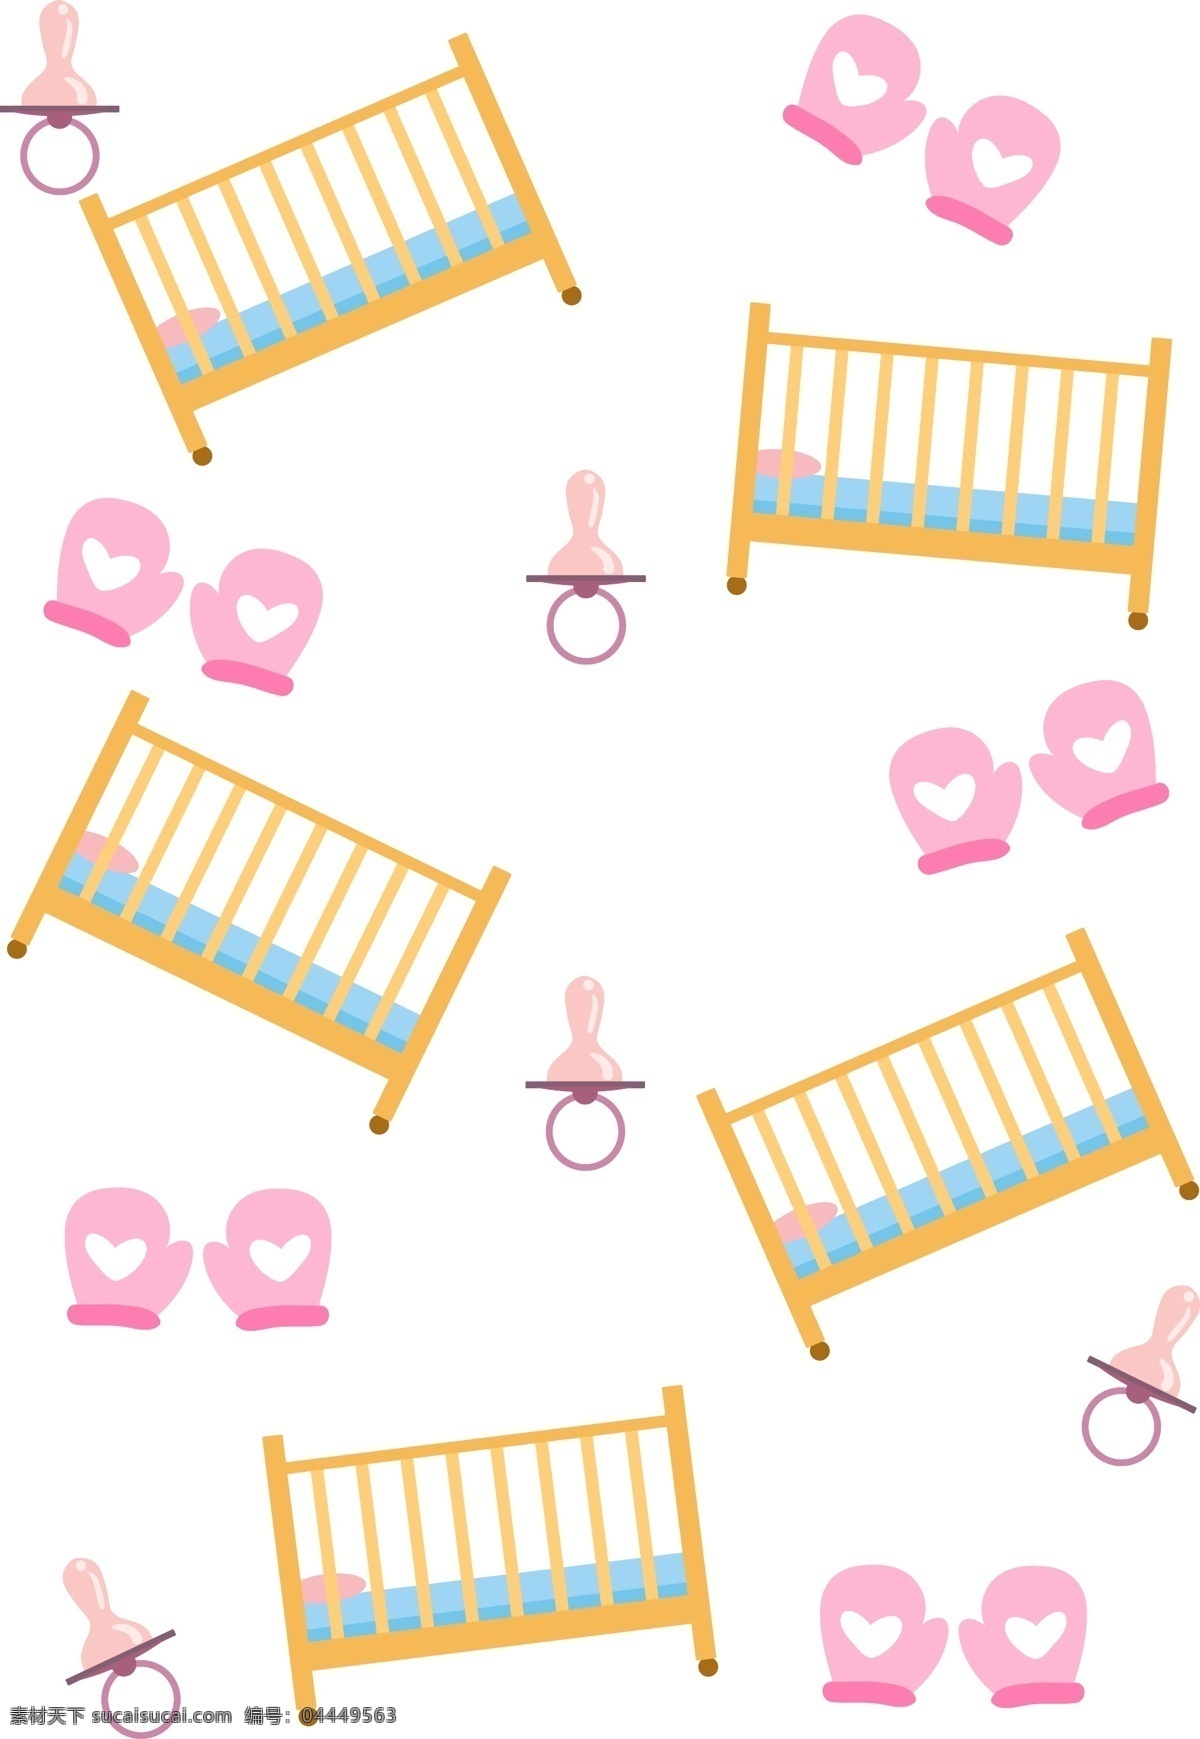 手绘 母婴 婴儿床 底纹 粉色的奶嘴 母婴底纹插画 婴儿 宝宝 宝贝 孩子 母亲 妈妈 卡通插画 手绘插画